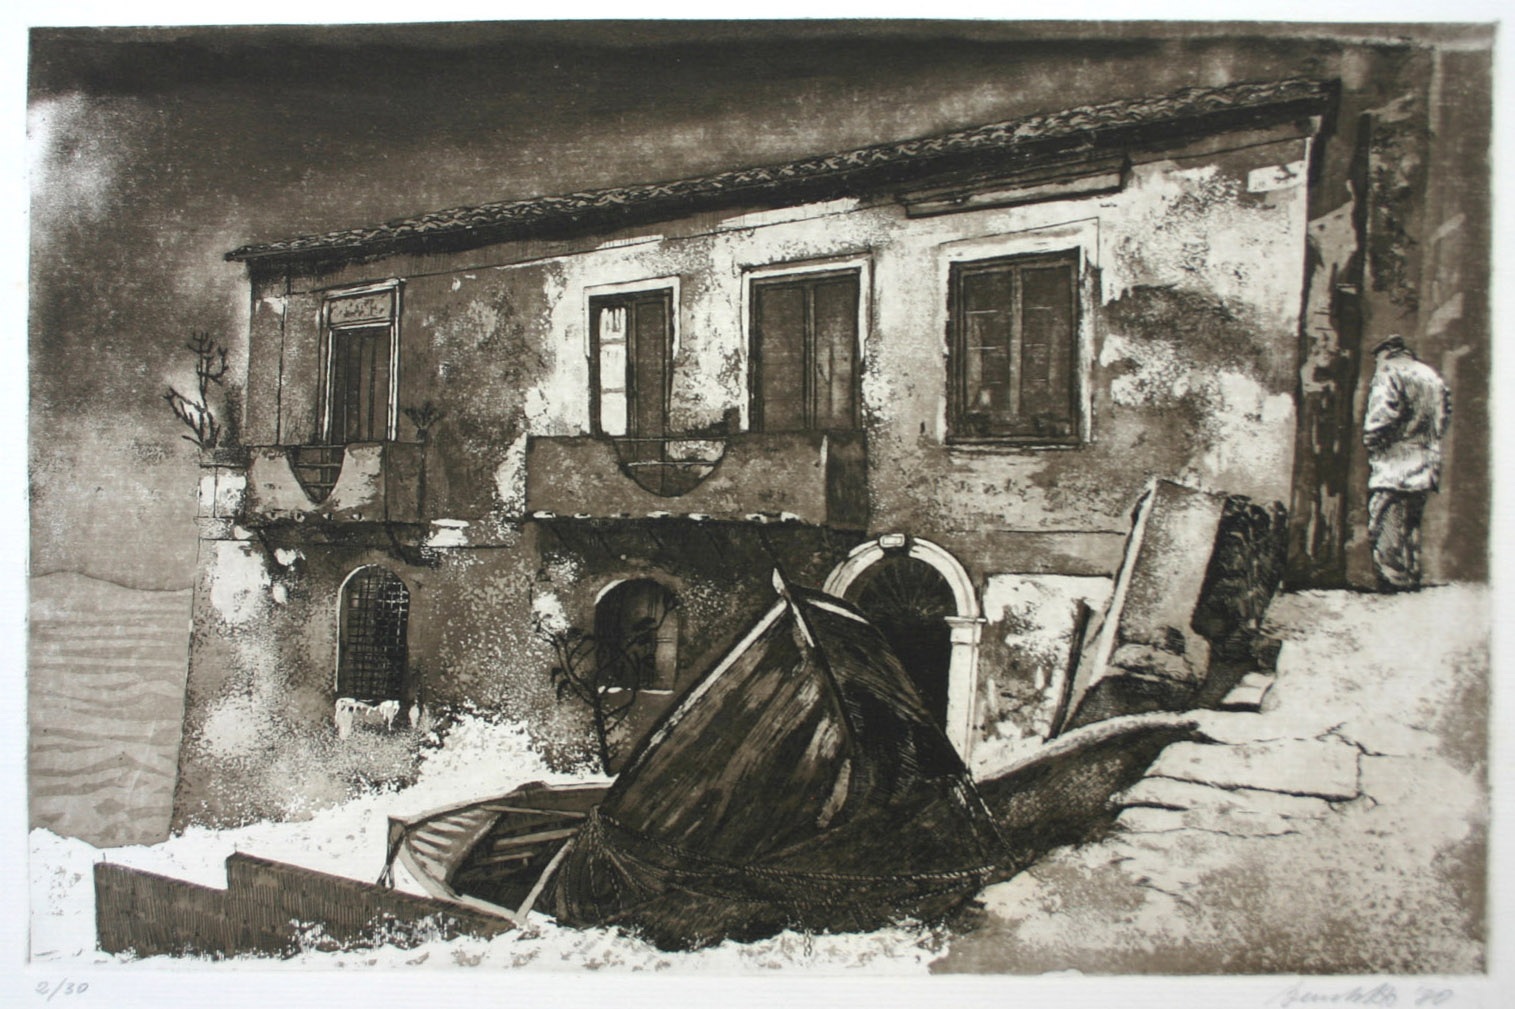 20 Mario Benedetto, Maltempo a Chianalea, 1980. Acf-act, 320 x 490 mm.